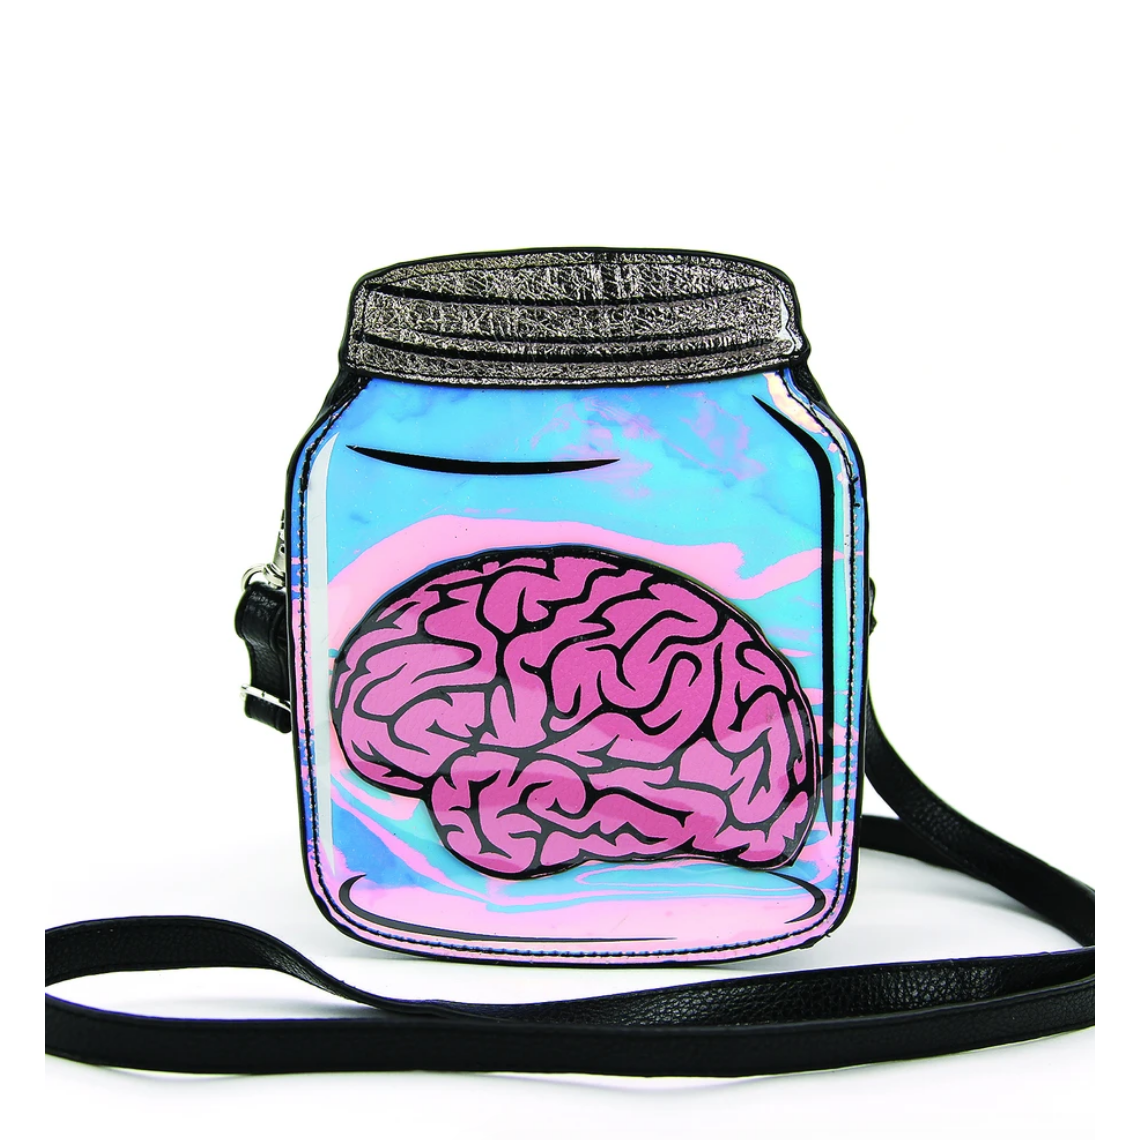 Brain In A Jar Crossbody Bag In Vinyl Material